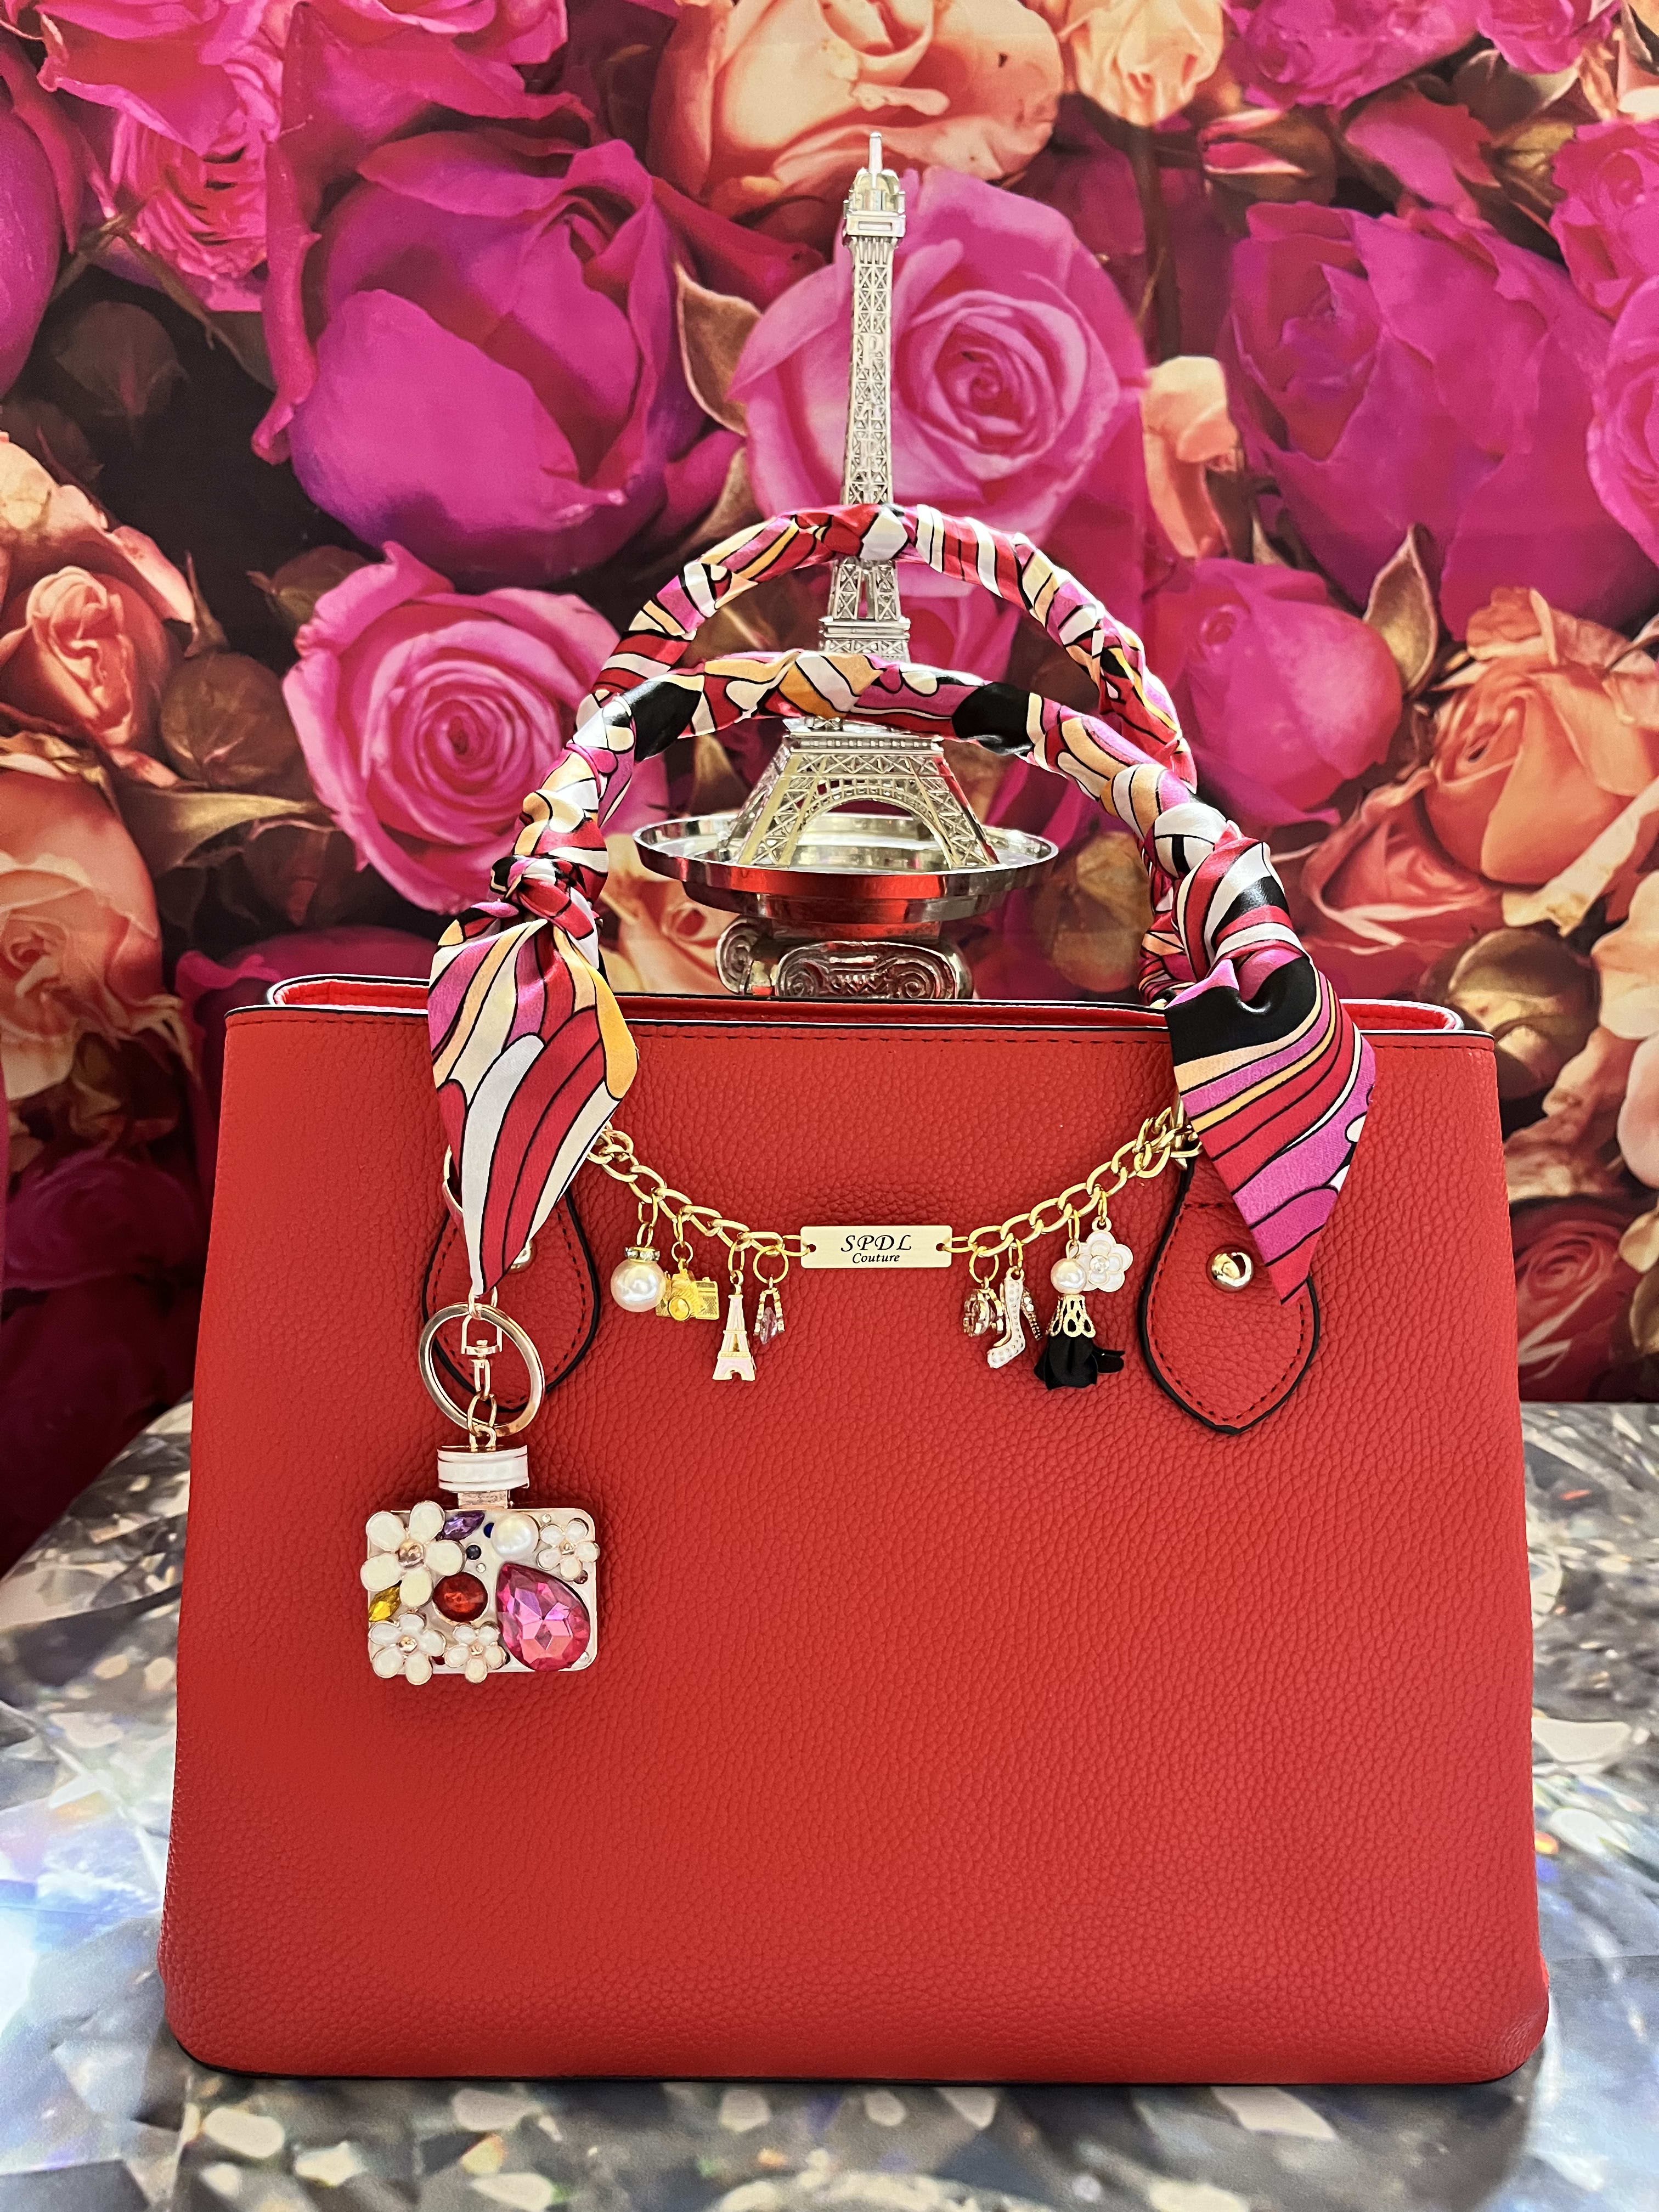 Thoughts on bag charms? : r/handbags